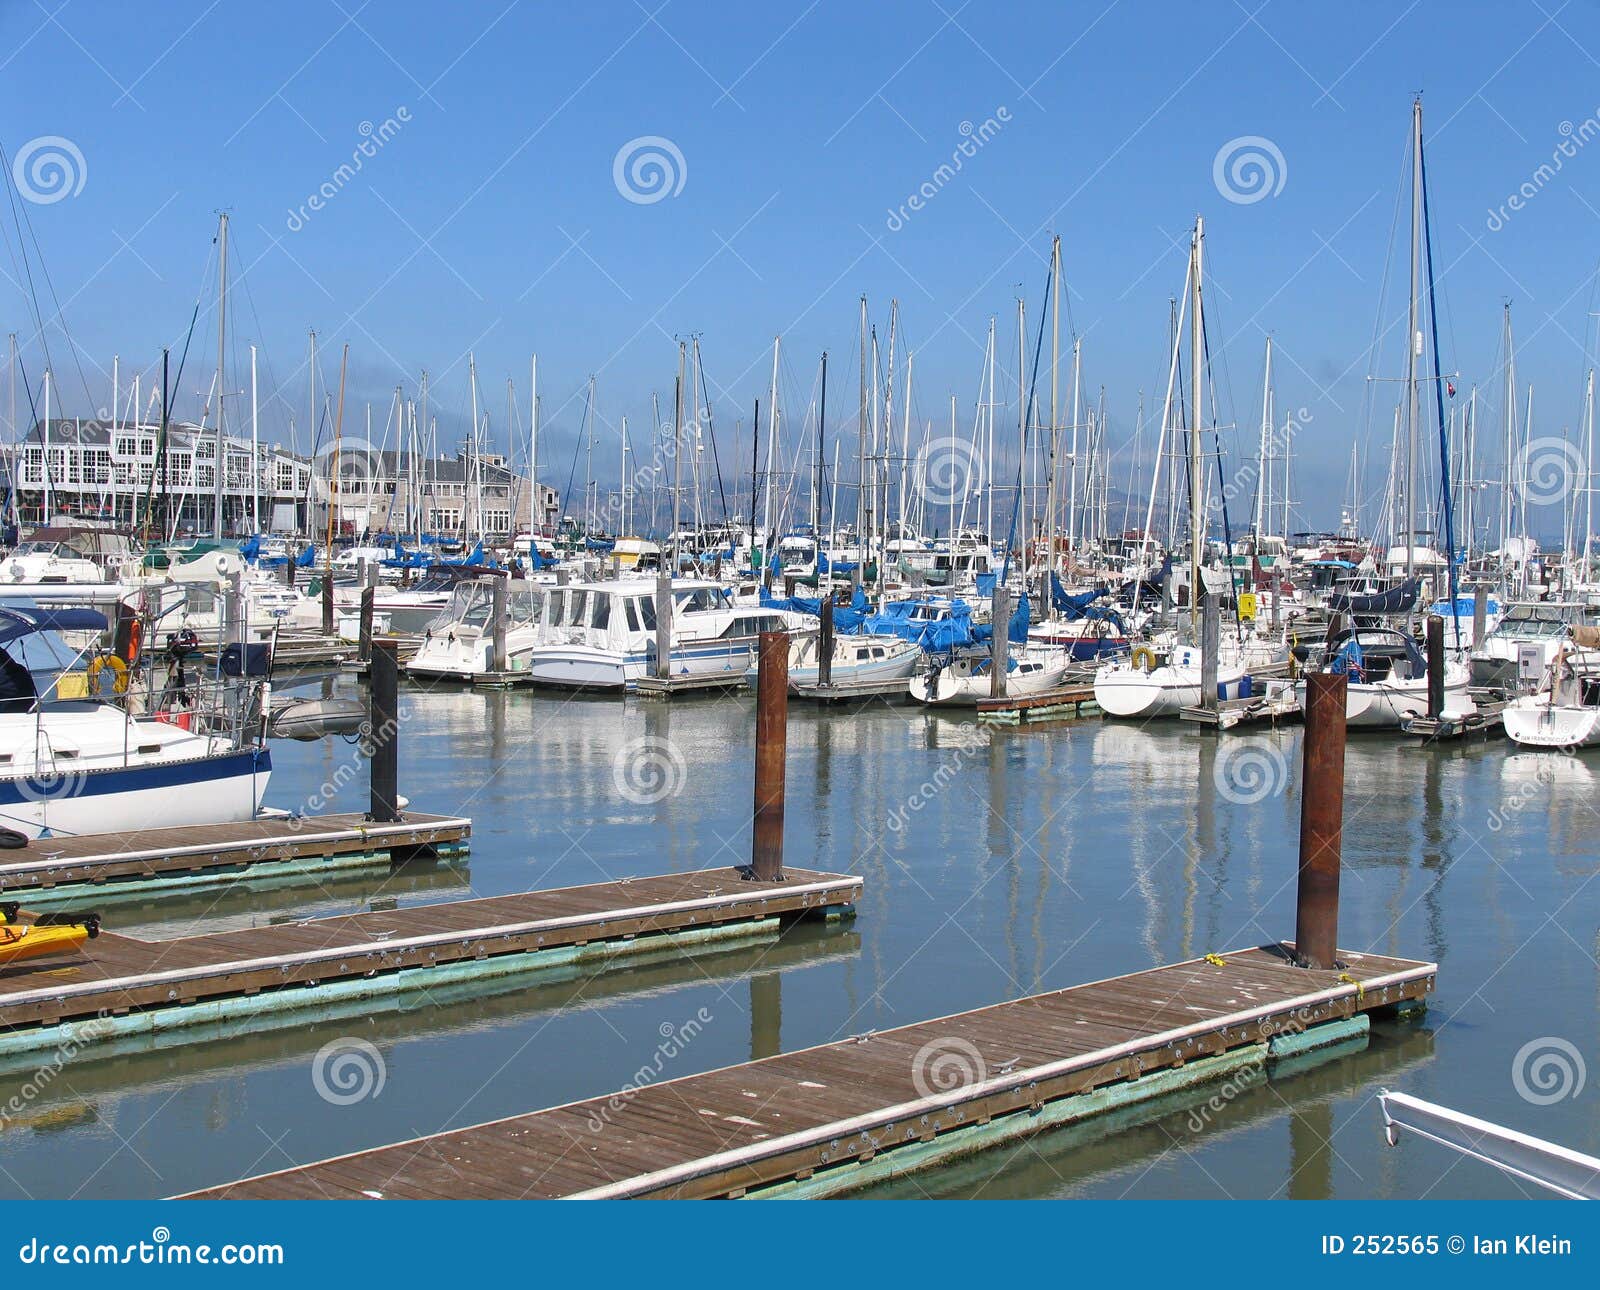 Boats at Fisherman S Wharf, San Francisco Stock Image - Image of sail ...